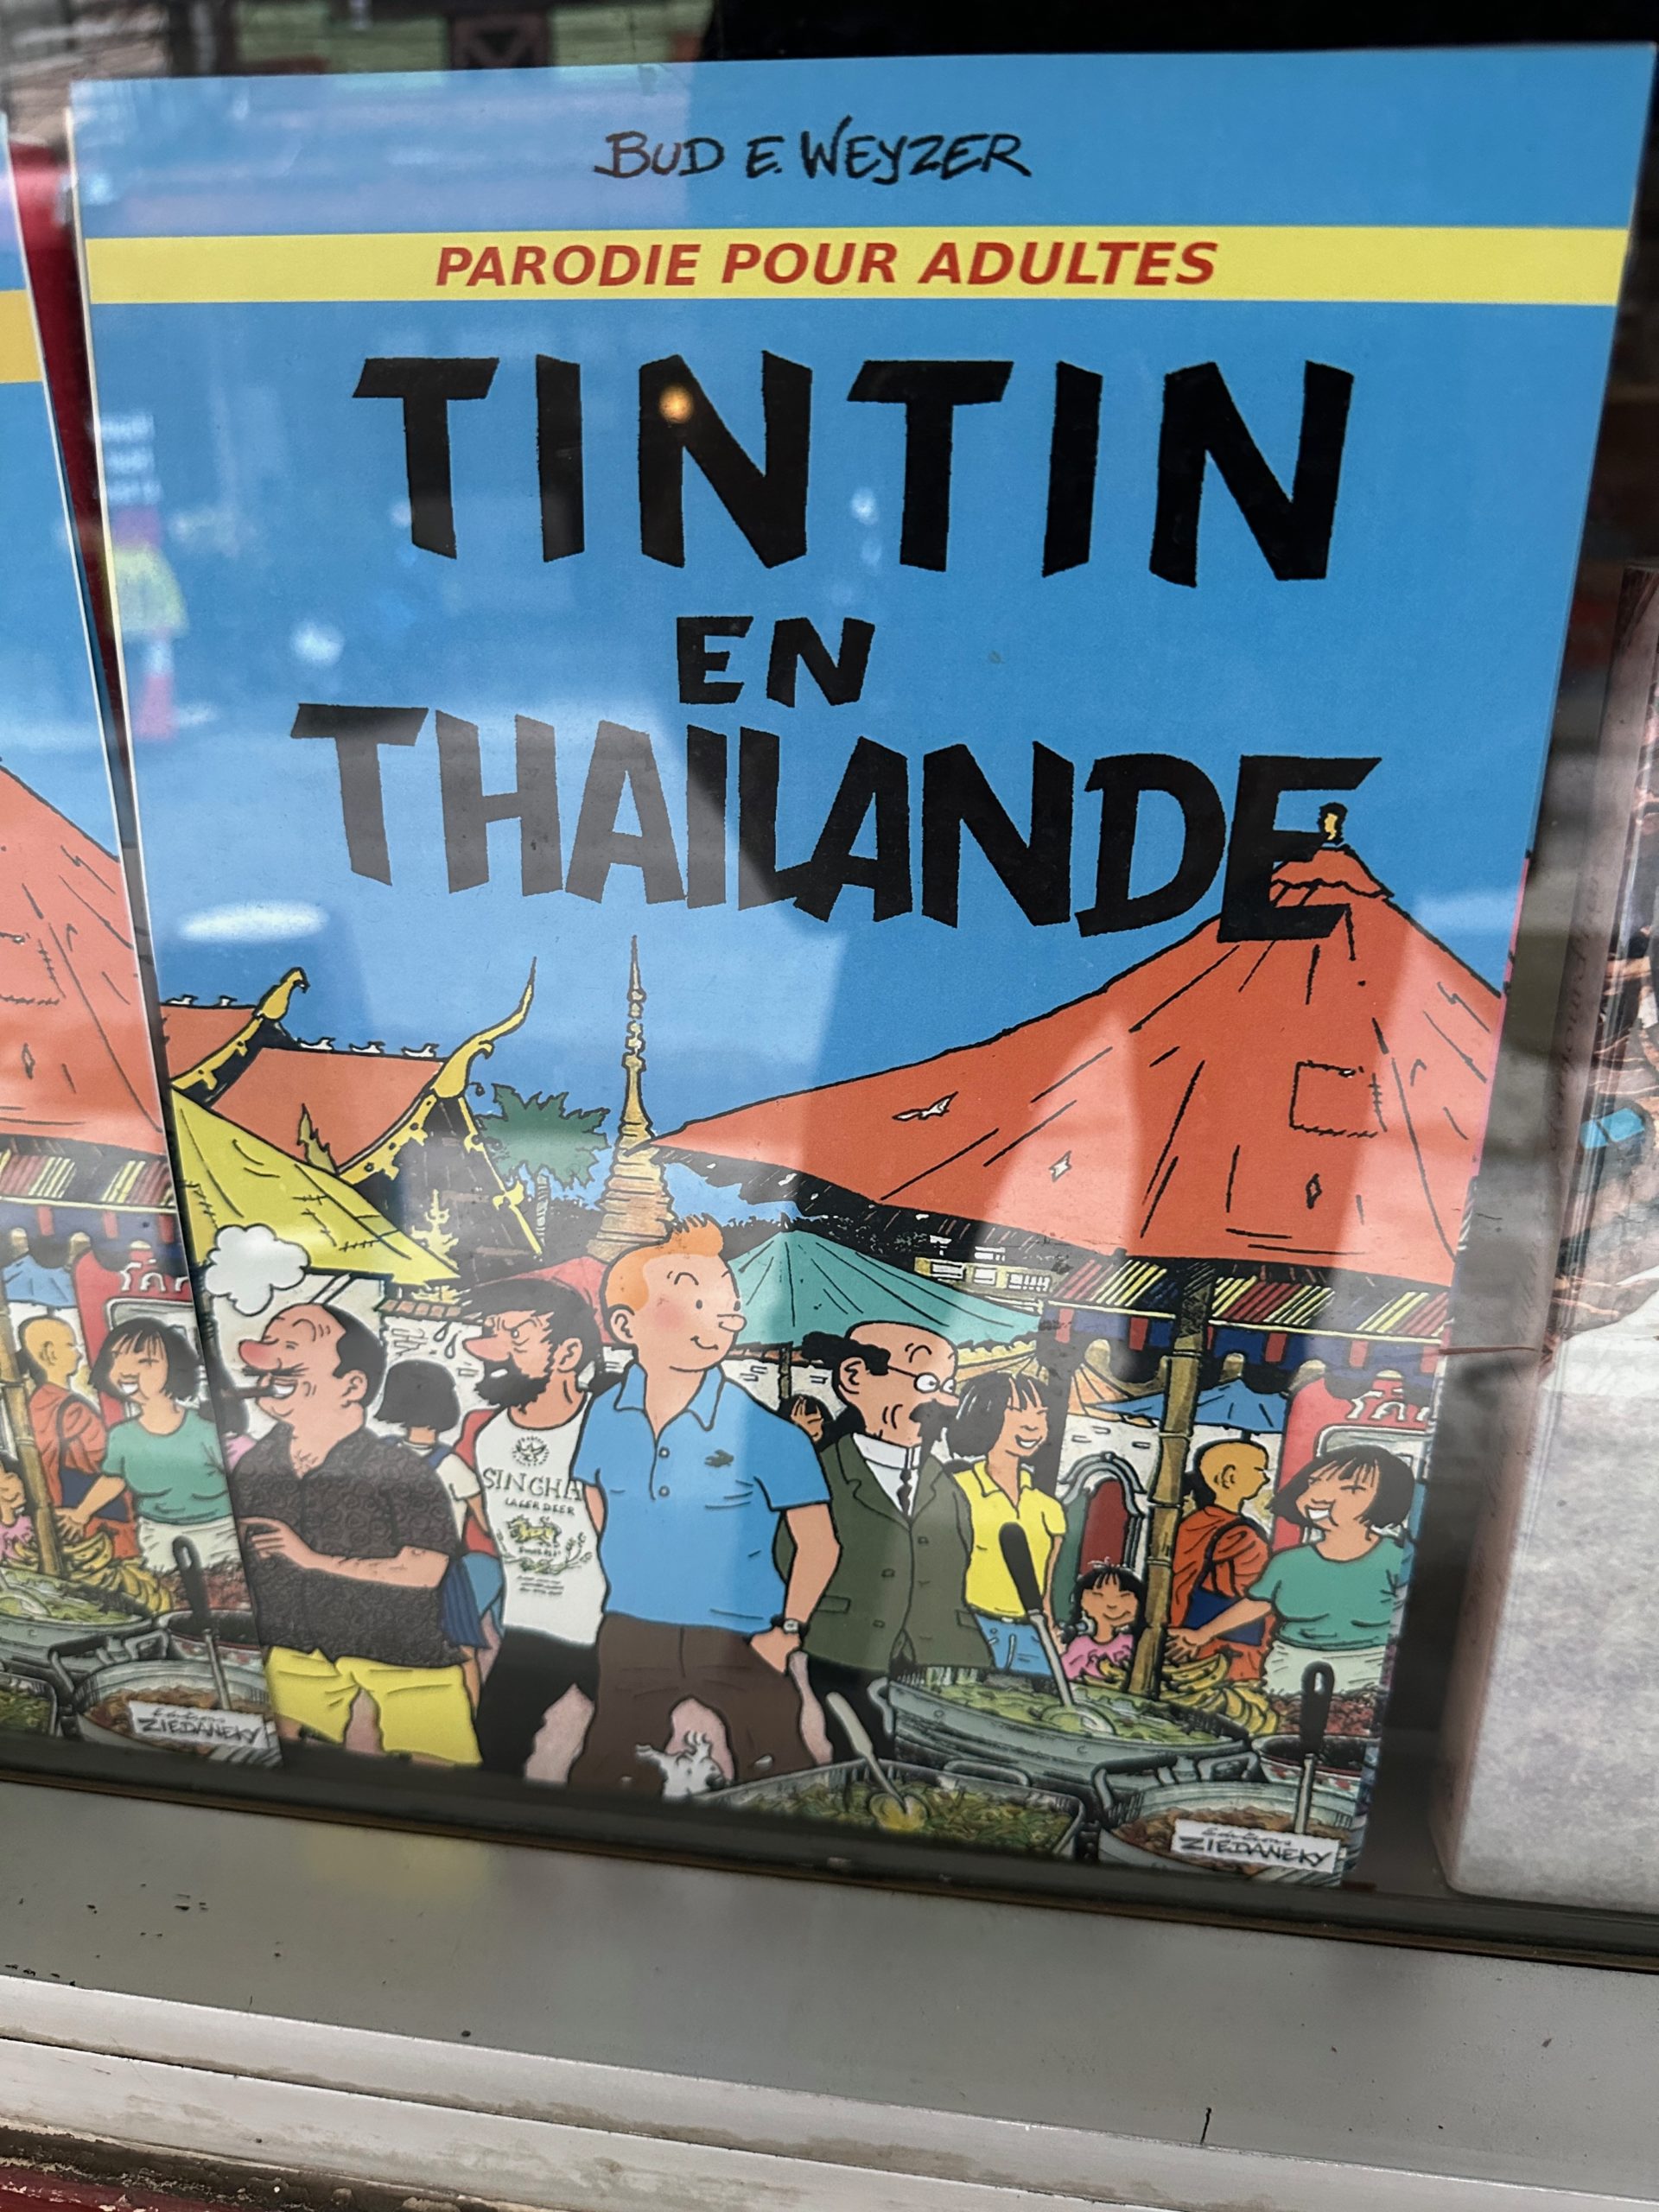 Couverture de bande dessinée parodique 'Tintin en Thaïlande' par Bud E. Weyzer exposée en vitrine.